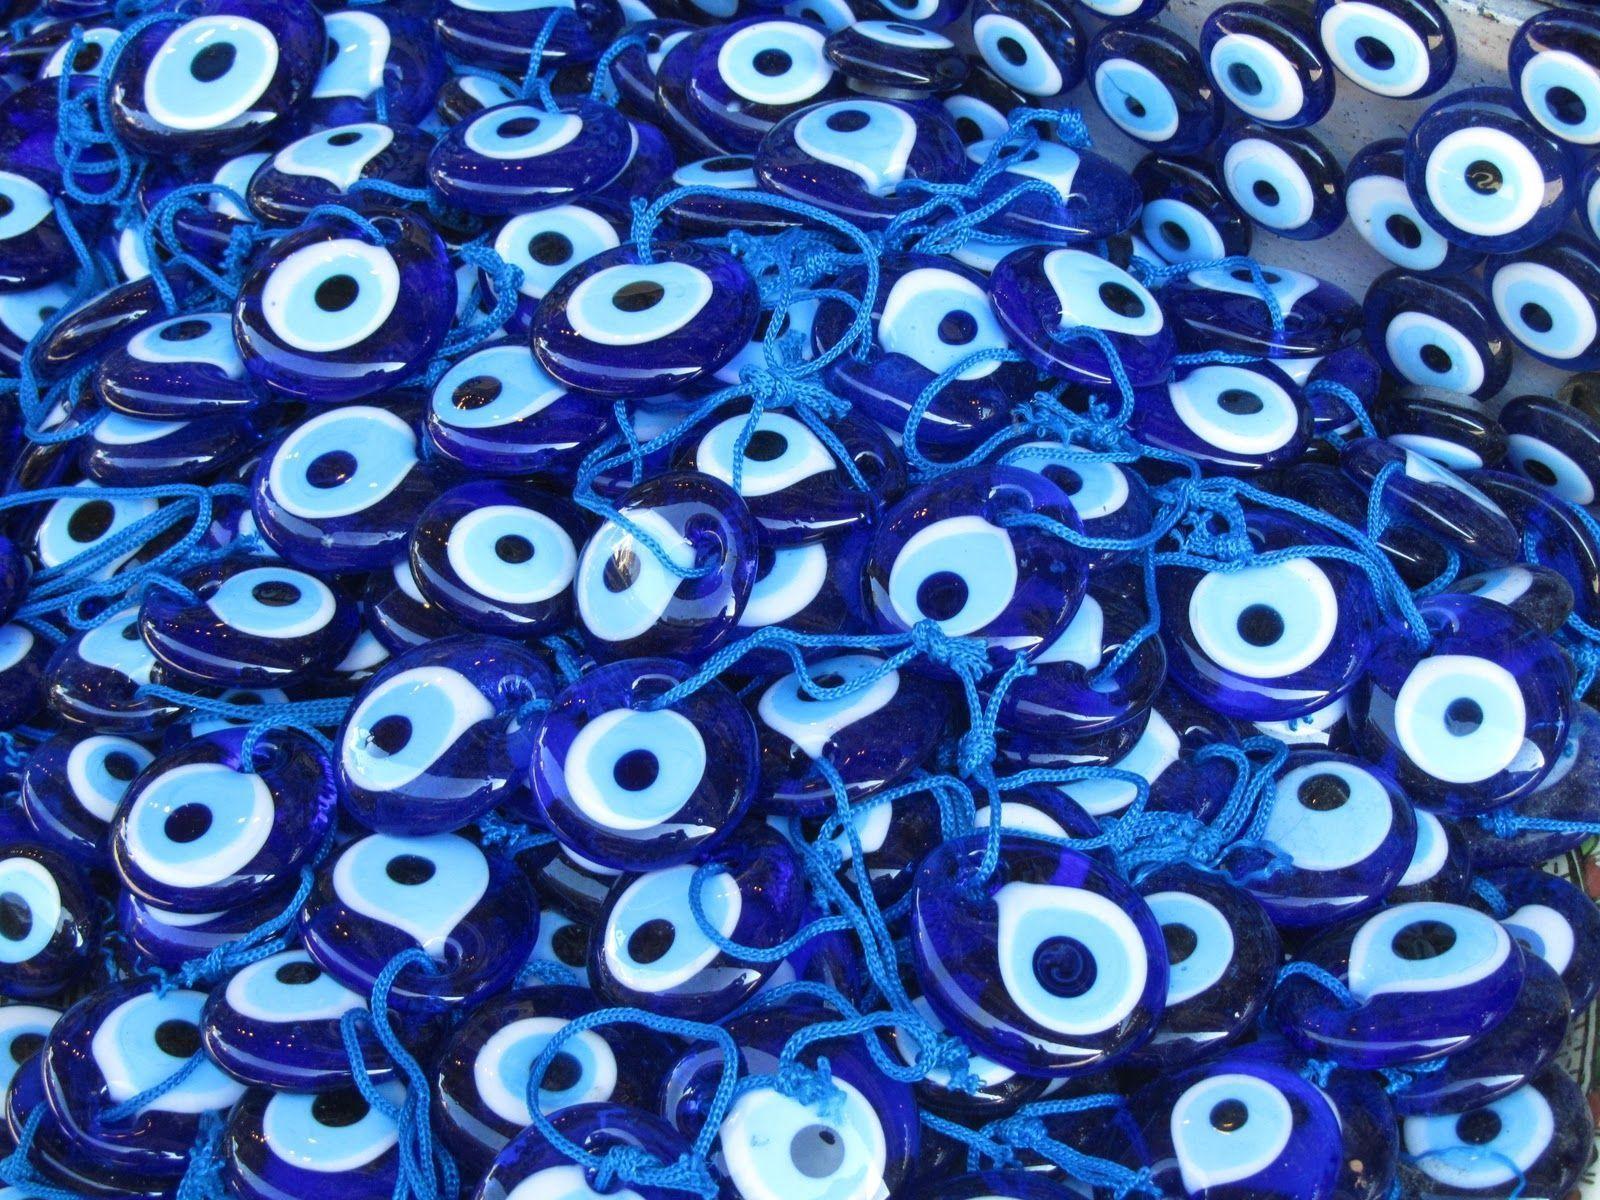 Evil Eye Wallpaper. Ilustração olho, Imagens inspiradoras, Inspirador